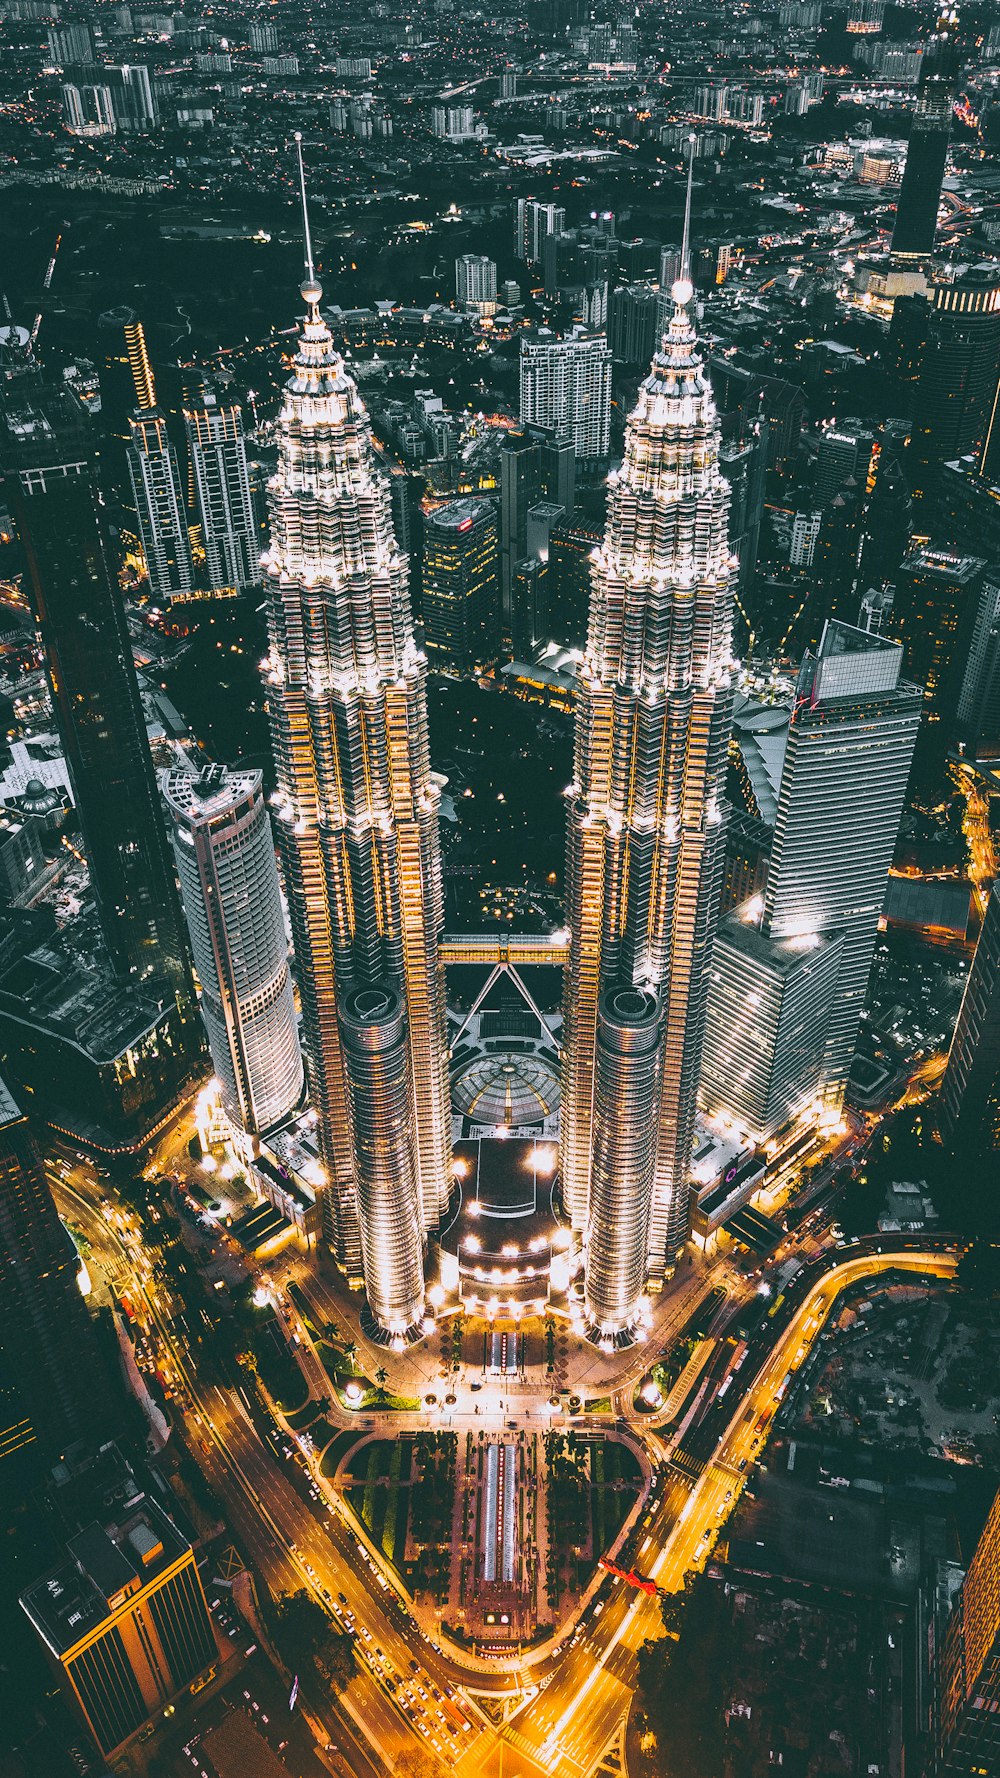 Twin Tower, Malasia